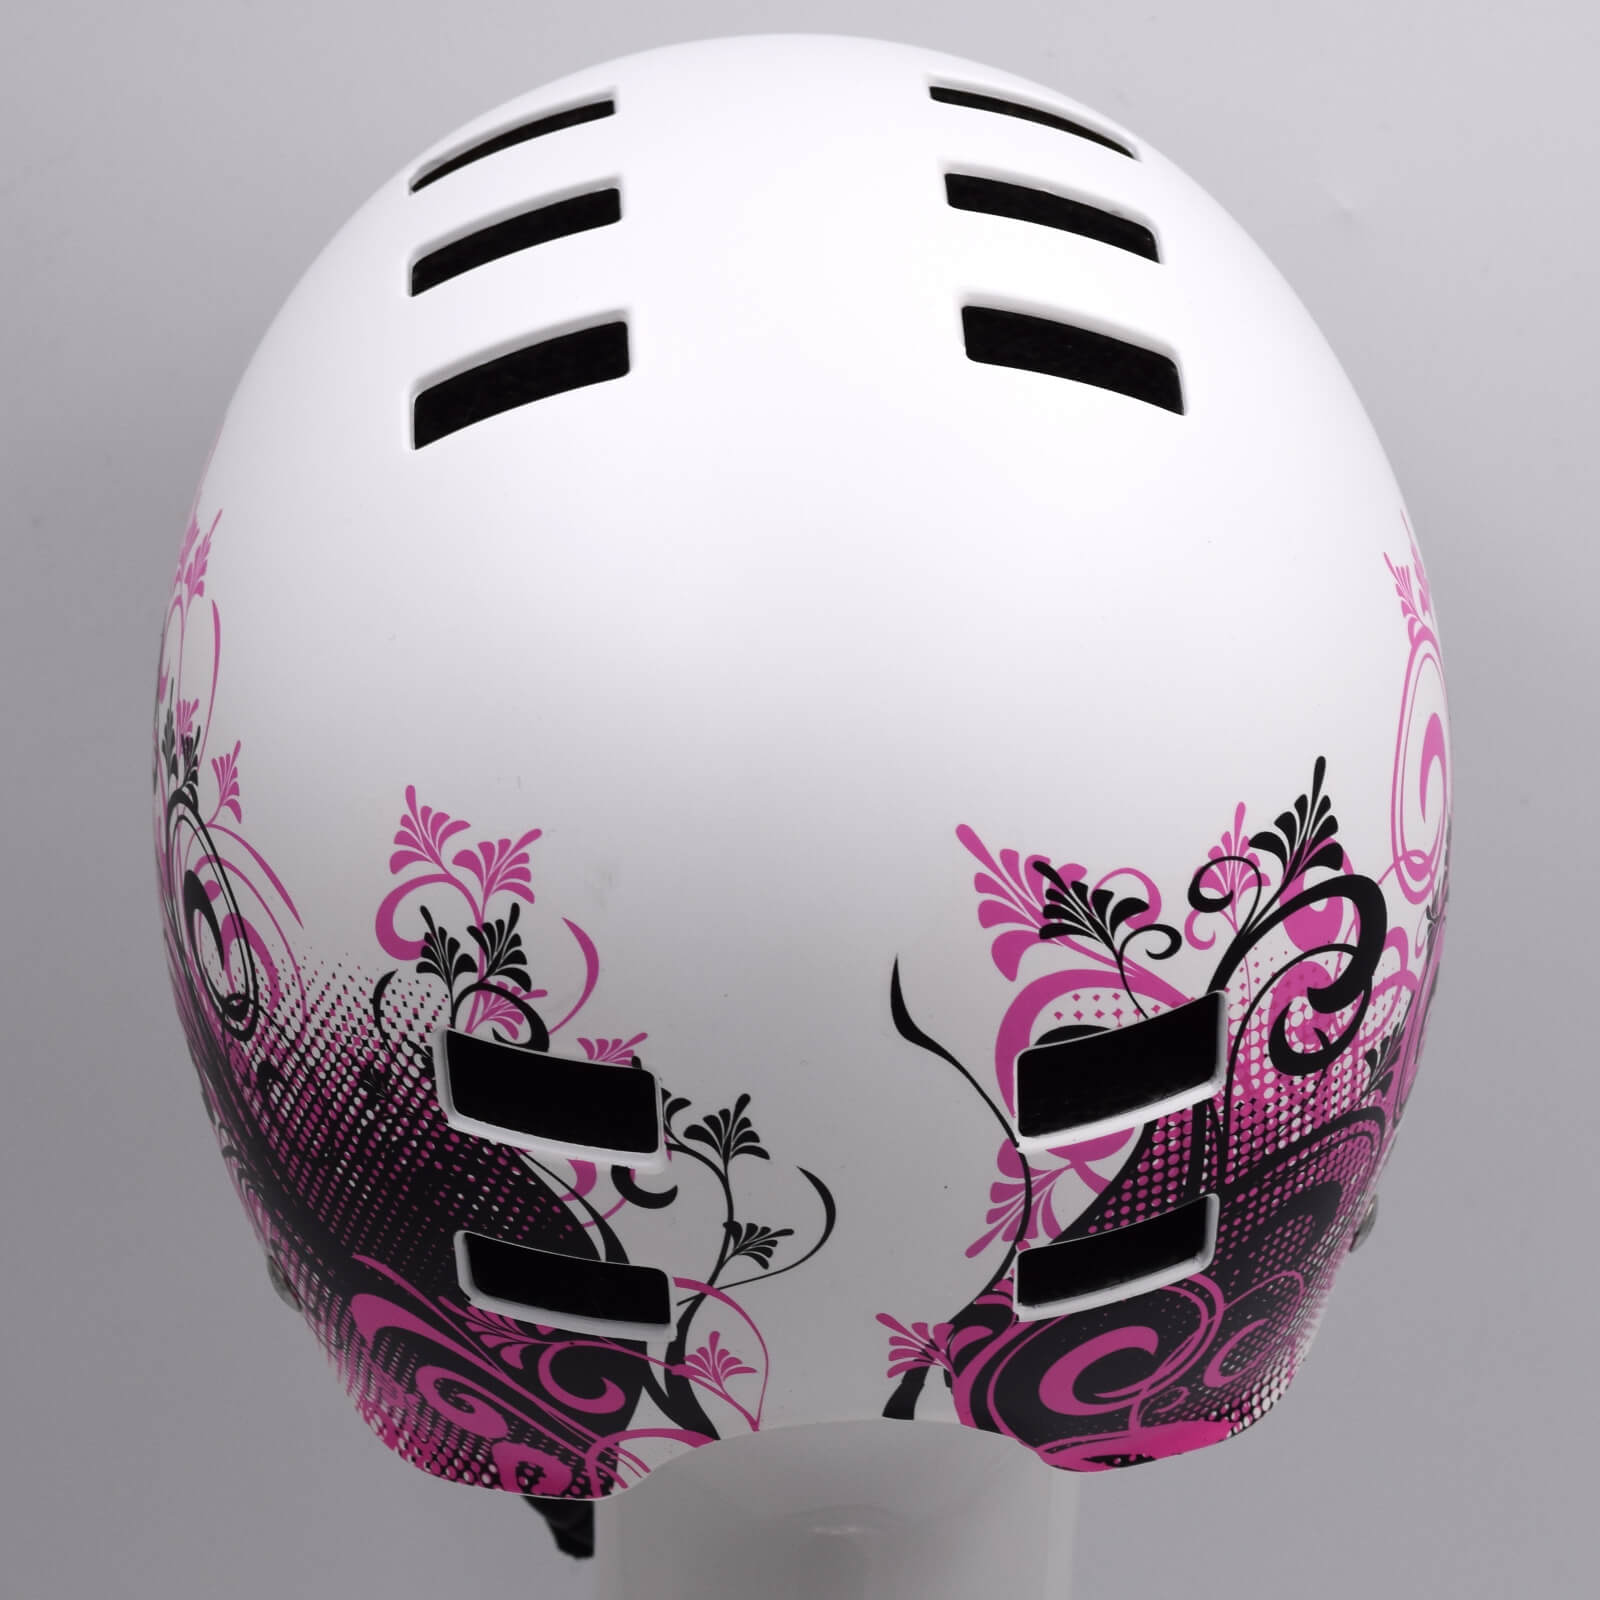 Bluegrass Super Bold BMX Dirt Lid Cycling Helmet Matte White Pink Small (51-55cm) Alternate 3